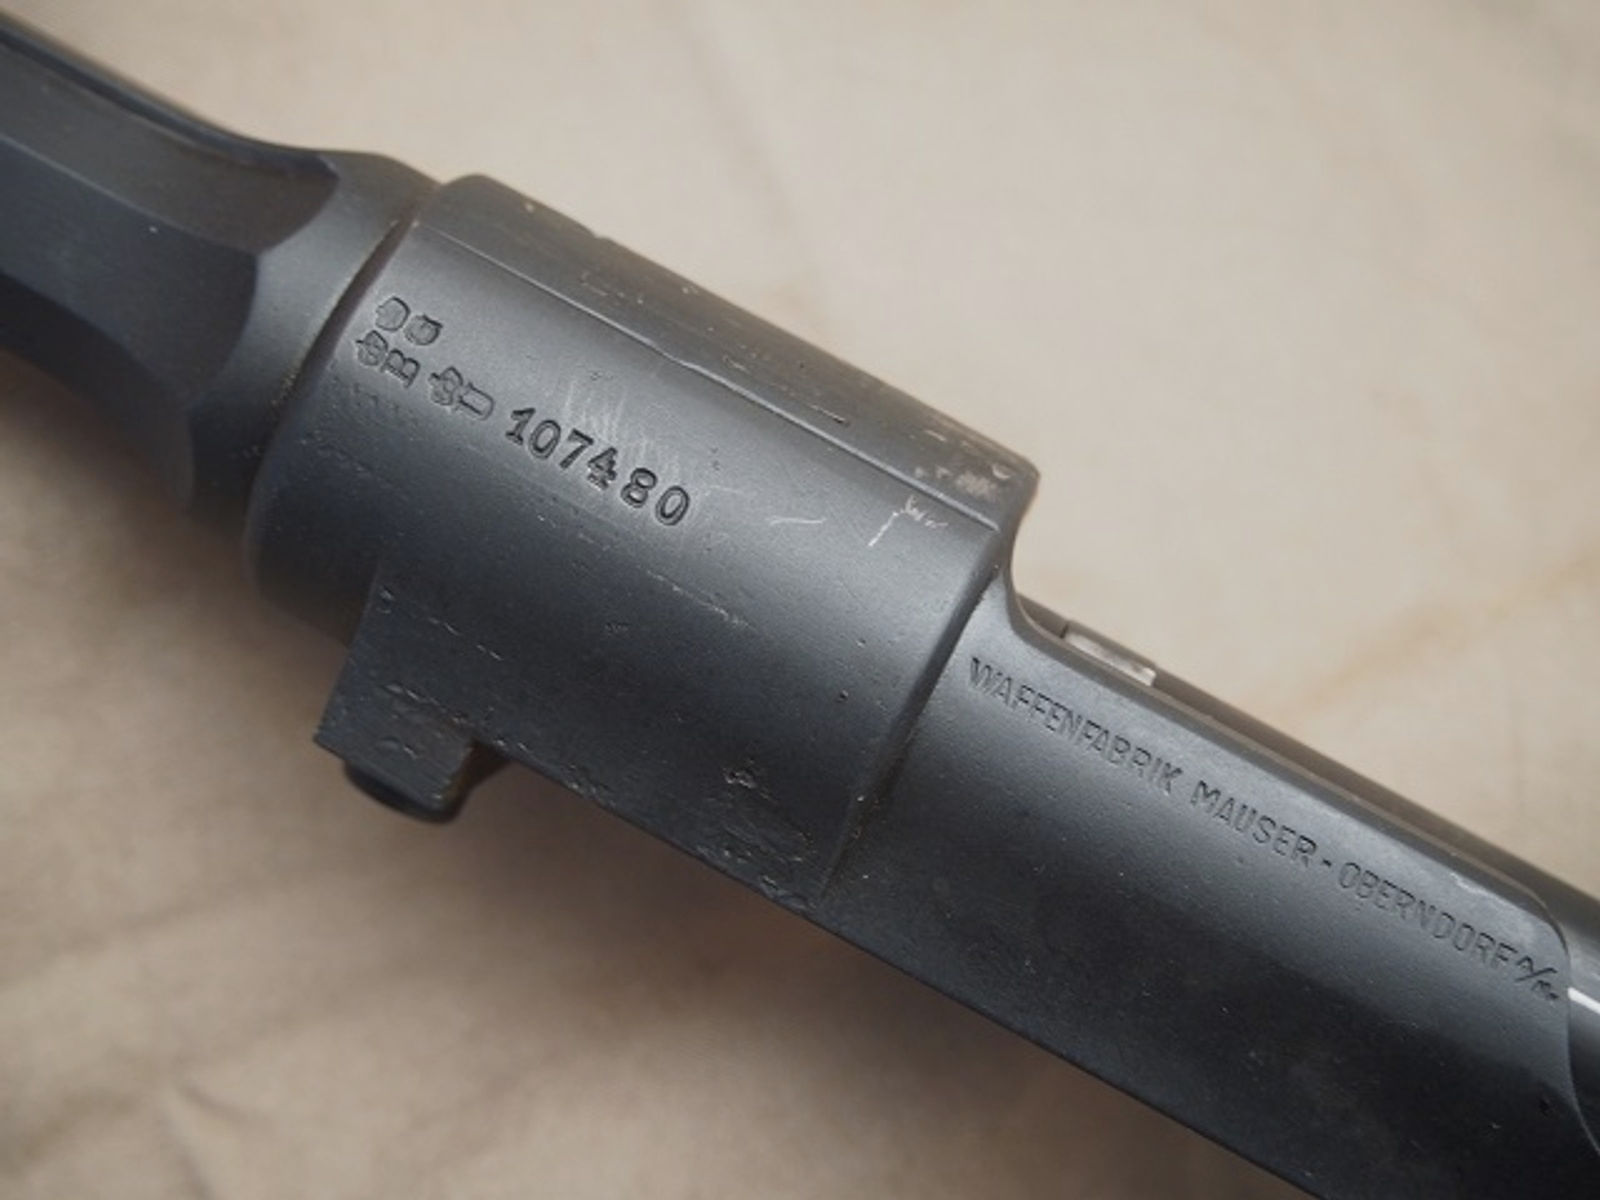 Zivilmauser Mod. B Teile, Mauser 98, Kal. 7x57, Vorkrieg